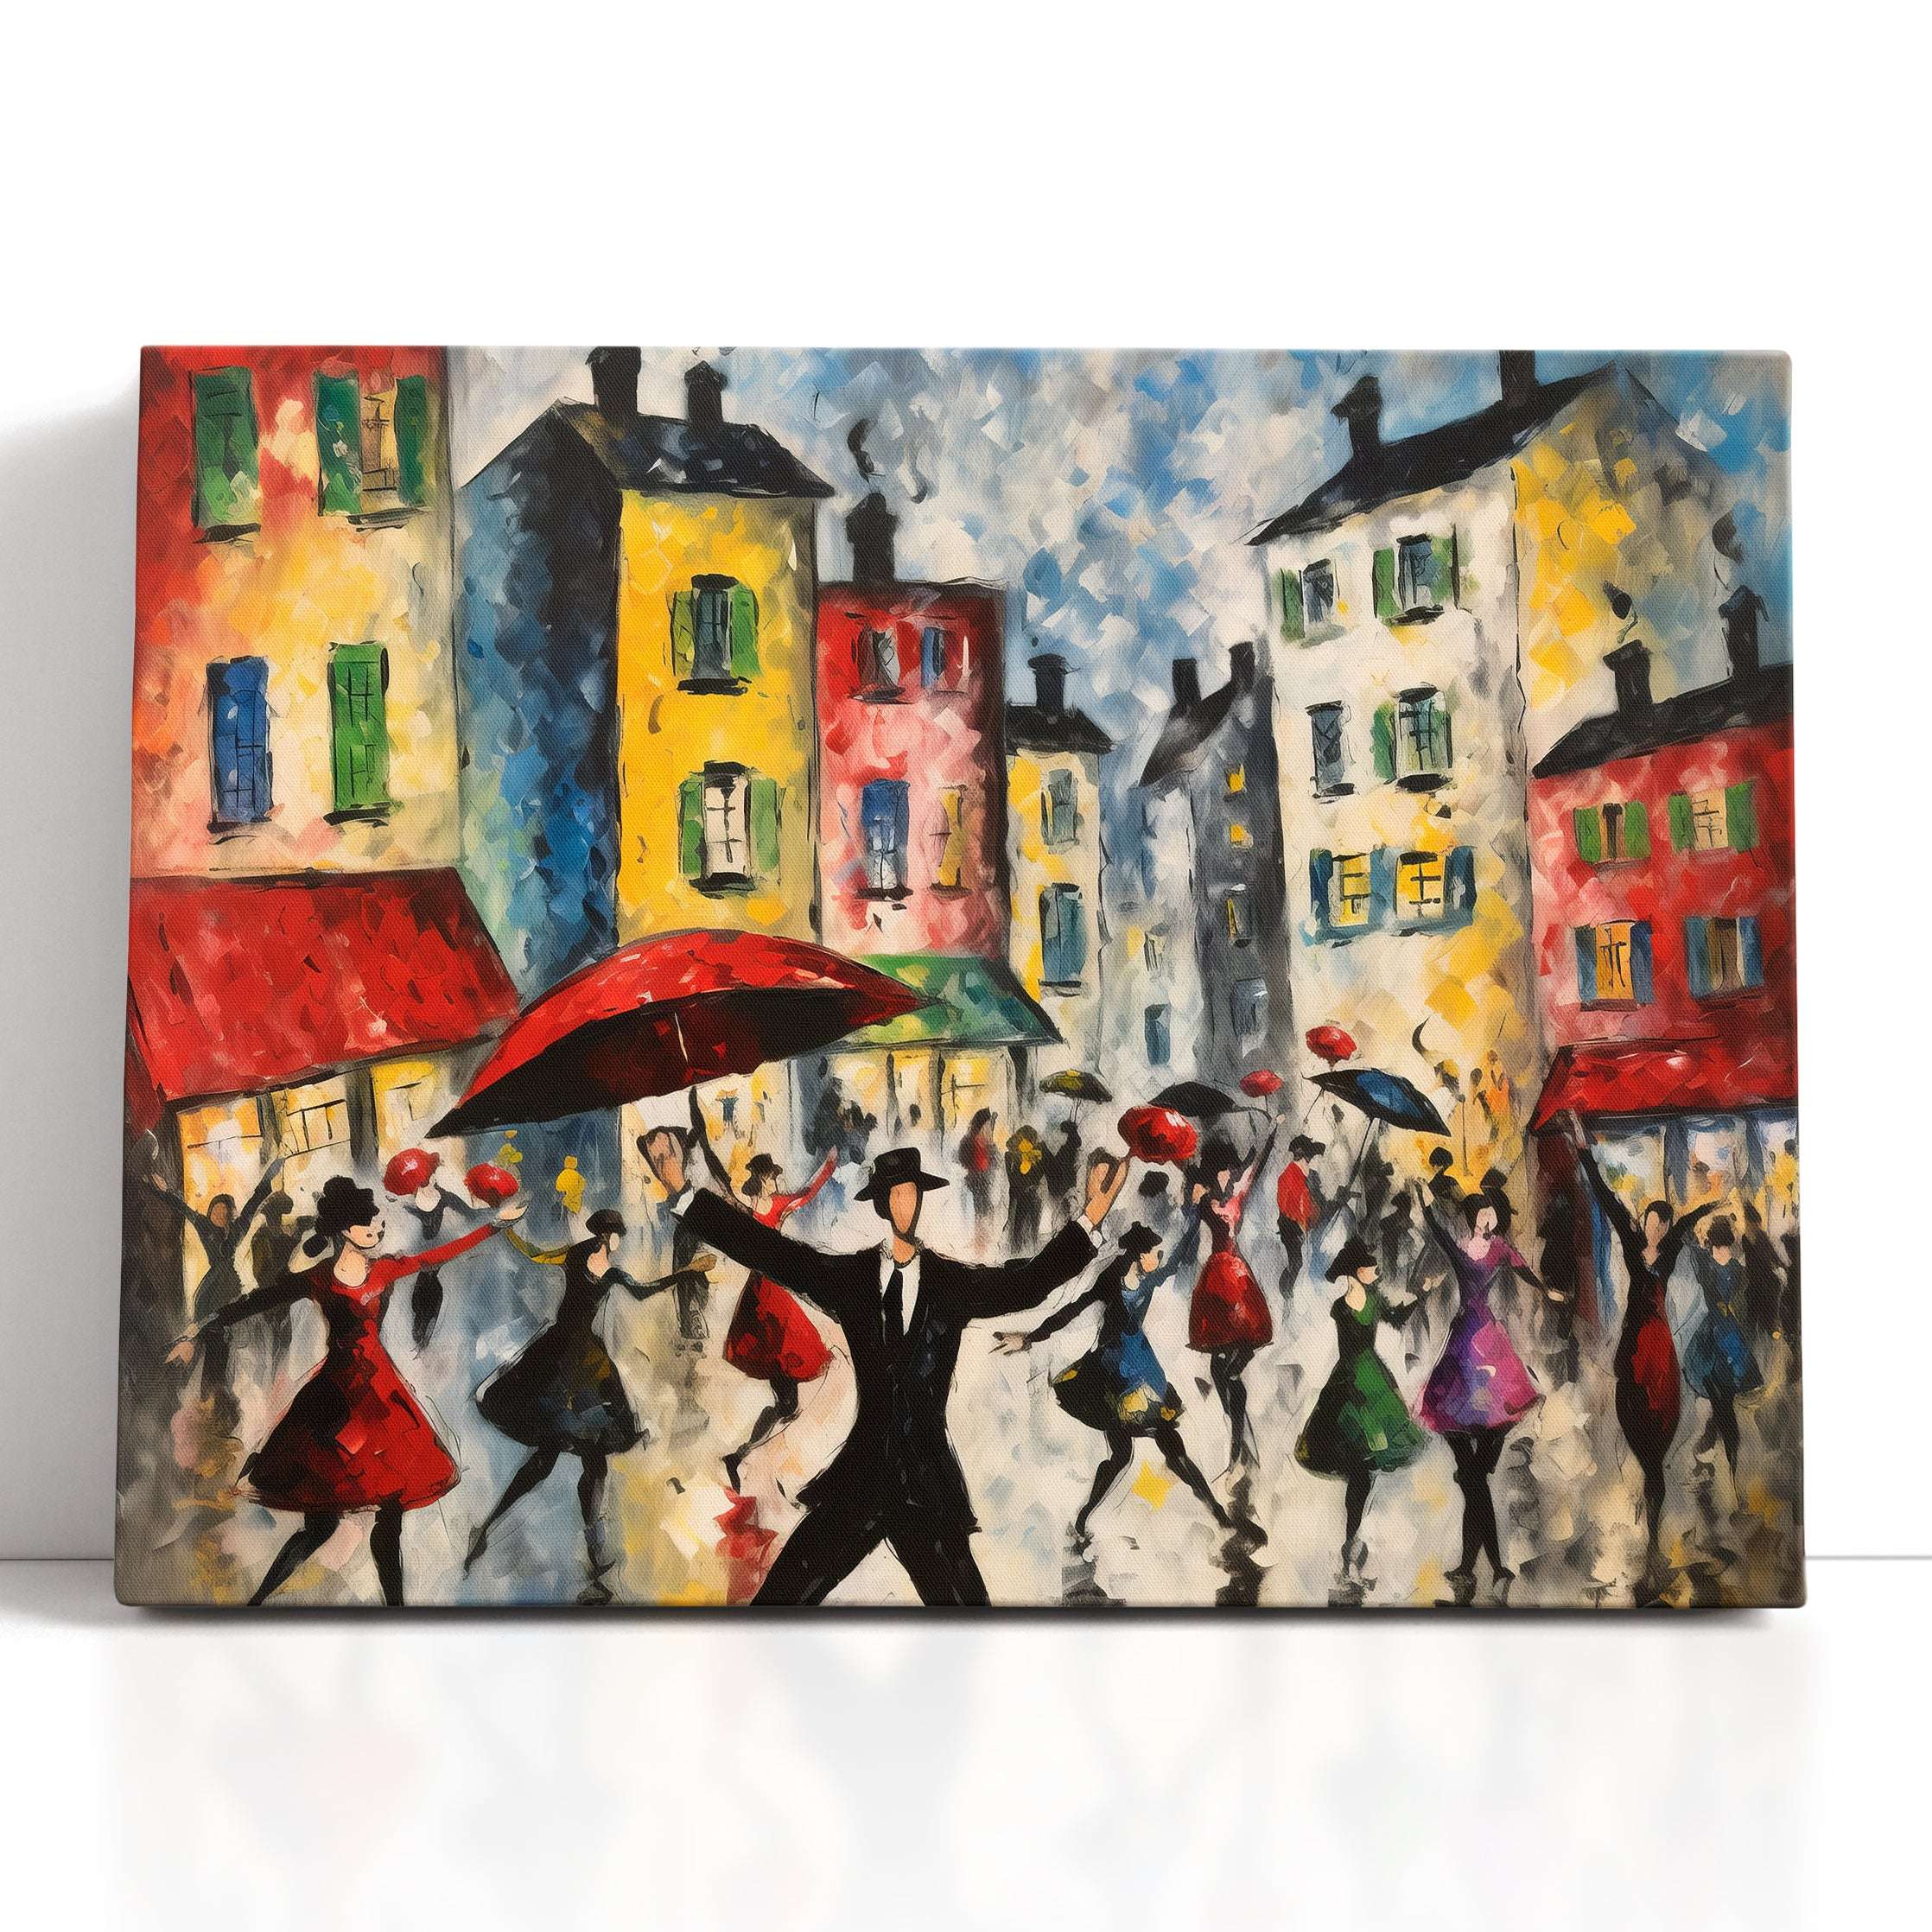 Dancing Crowd at City Square - Canvas Print - Artoholica Ready to Hang Canvas Print